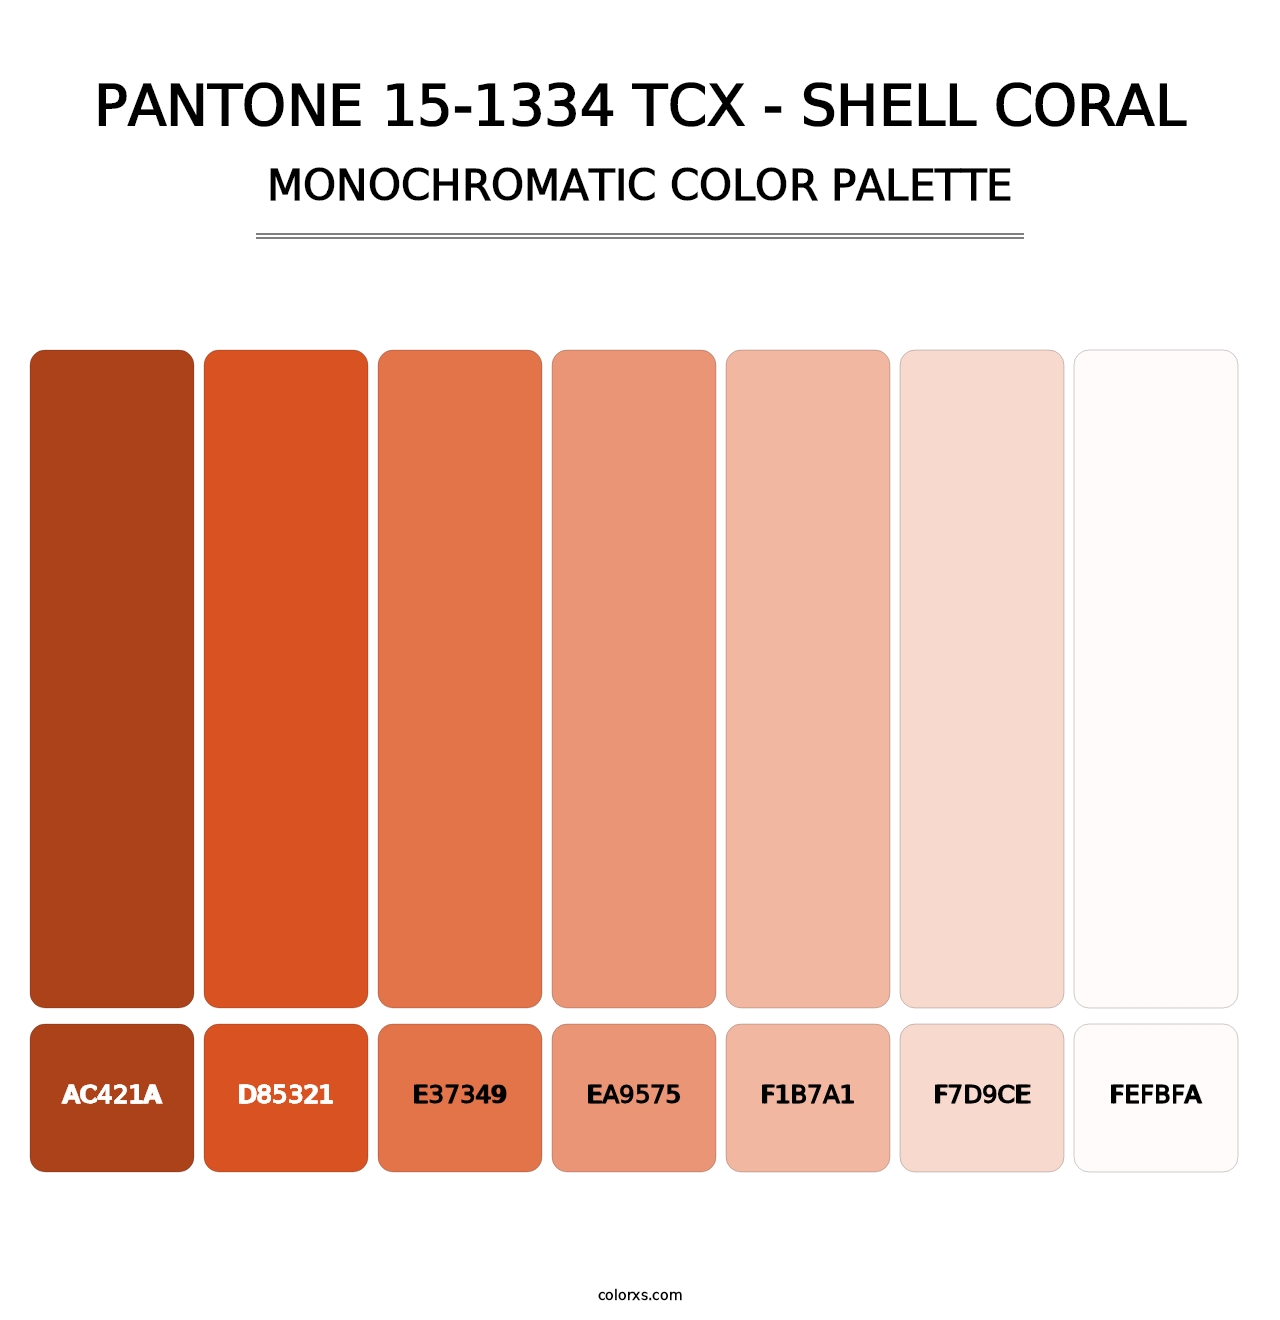 PANTONE 15-1334 TCX - Shell Coral - Monochromatic Color Palette